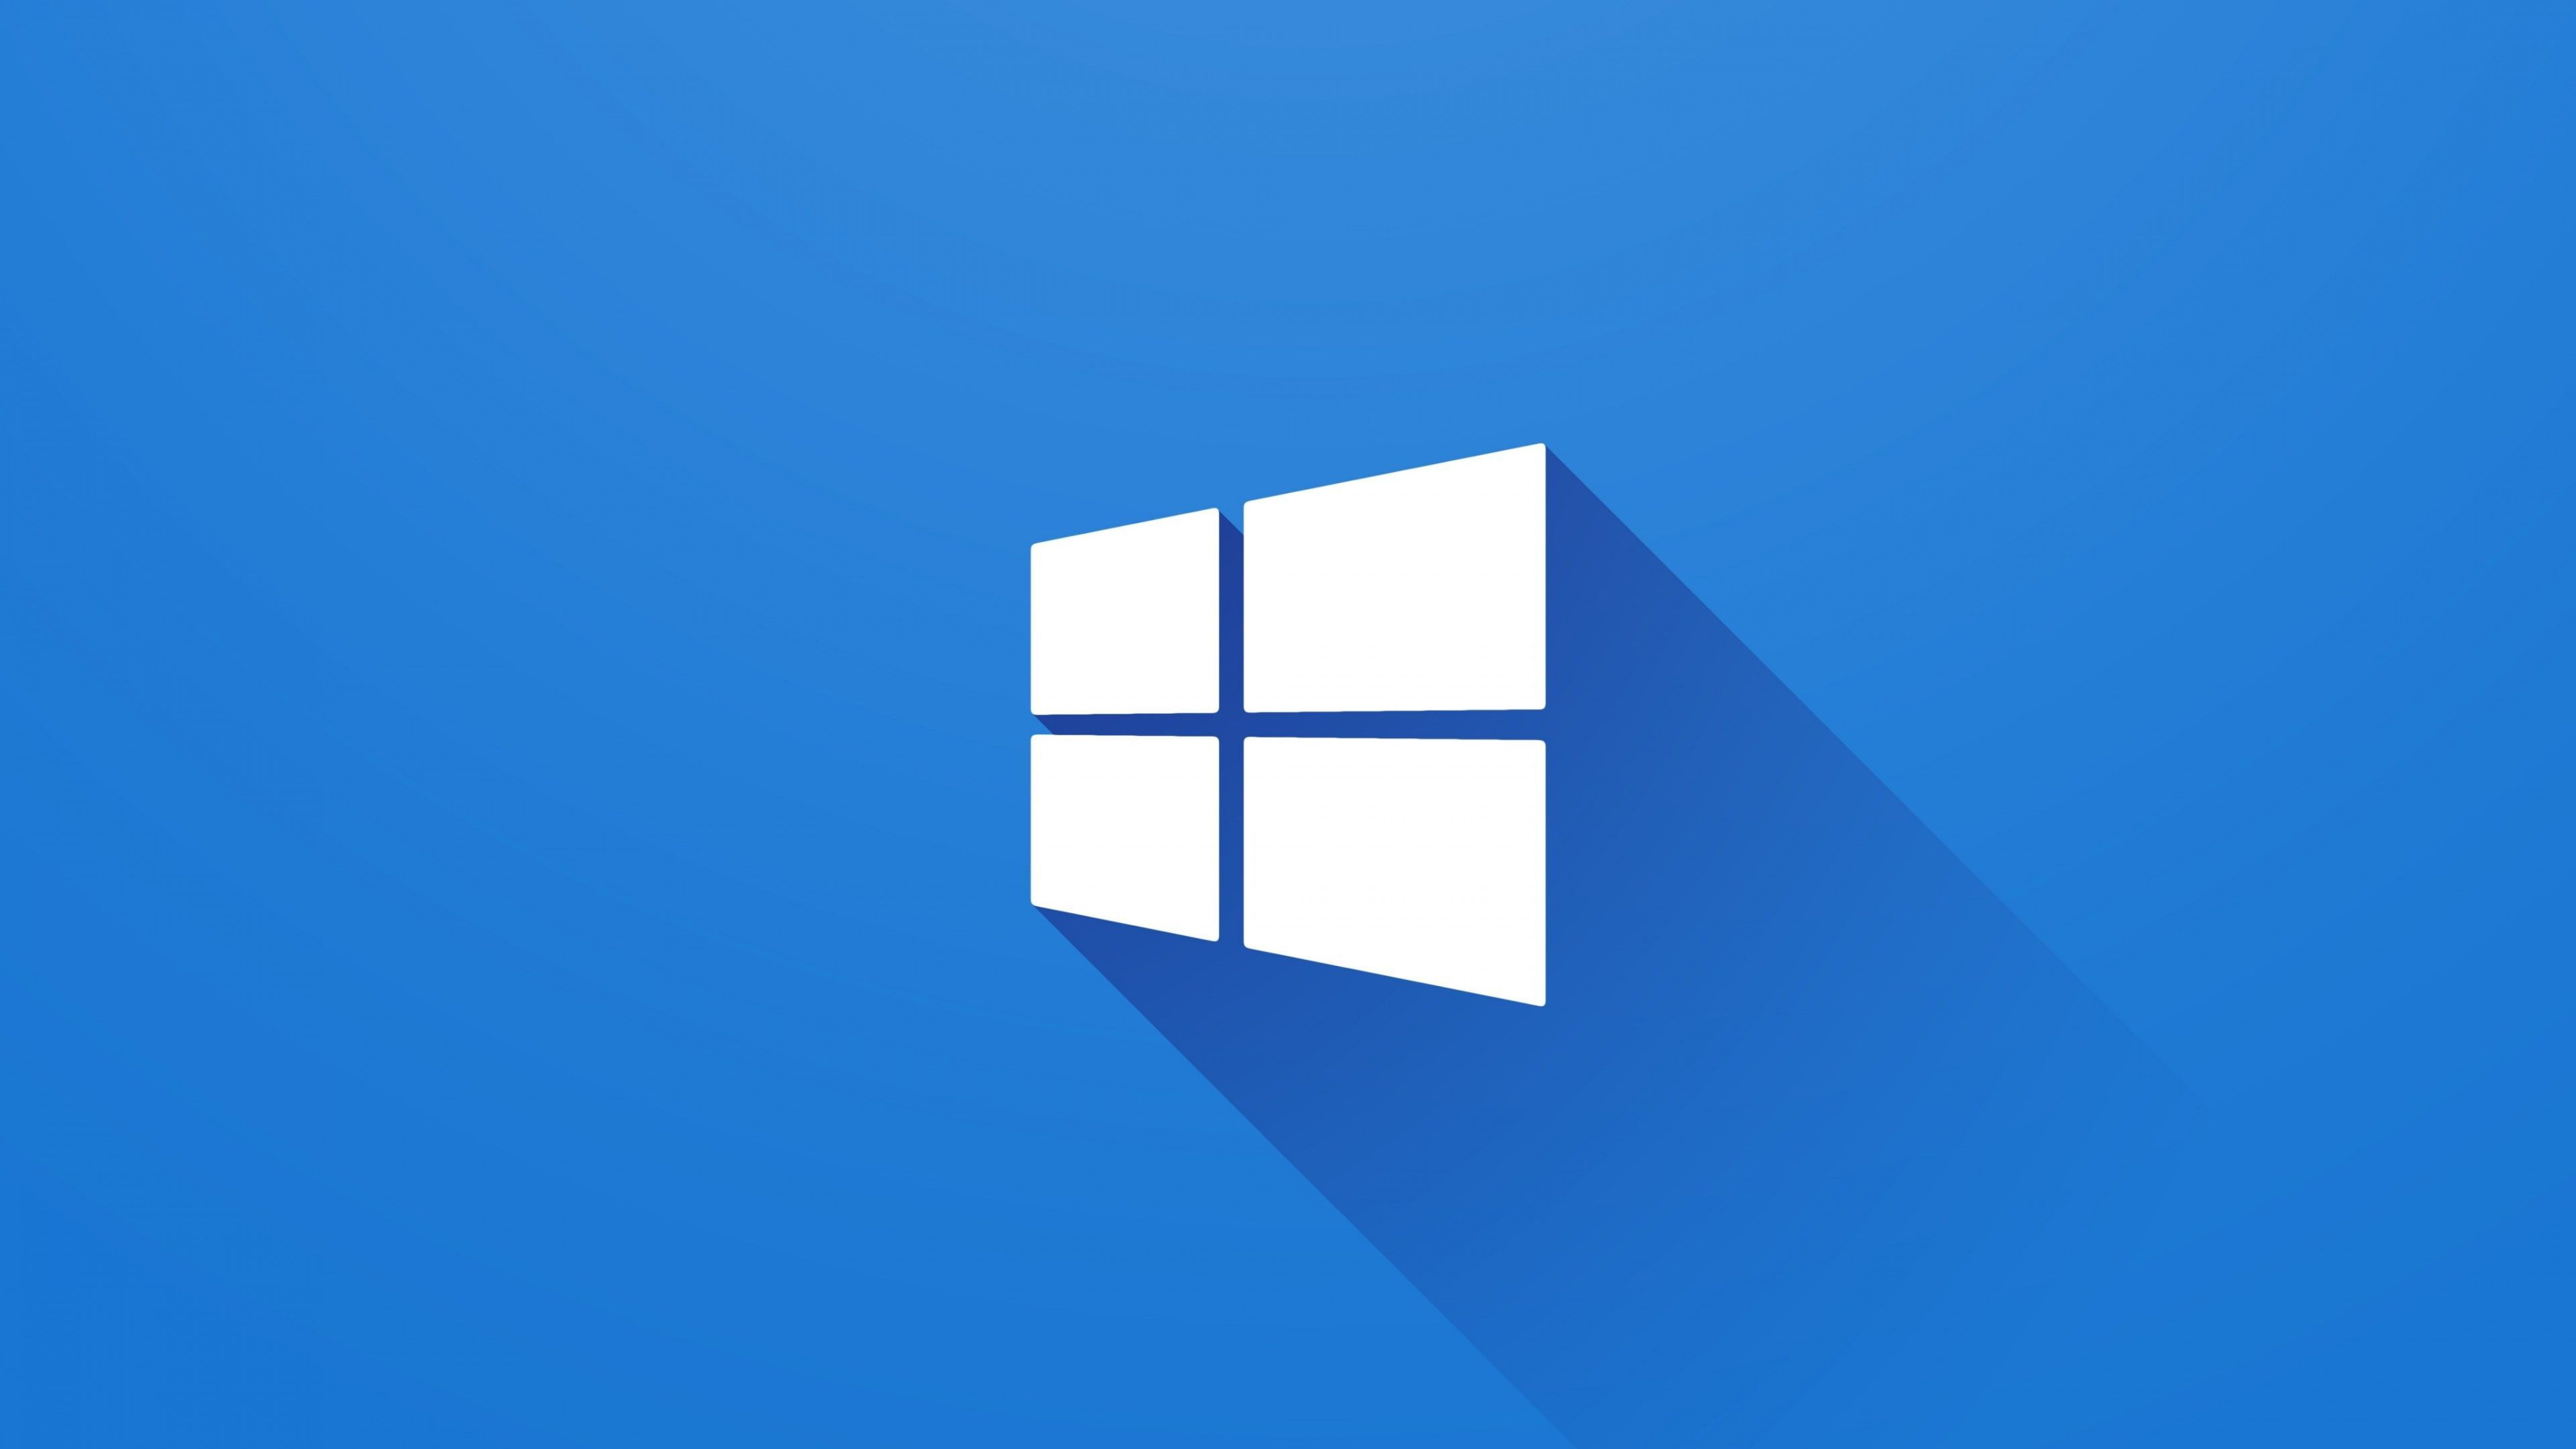 Logo Windows: Logo Windows đã trở thành một biểu tượng thuộc về Windows. Hiểu rõ được ý nghĩa của logo là một yếu tố không thể thiếu trong việc sử dụng máy tính. Hãy khám phá tất cả các hình ảnh logo Windows đa dạng để tìm được mẫu phù hợp nhất với phong cách của bạn.